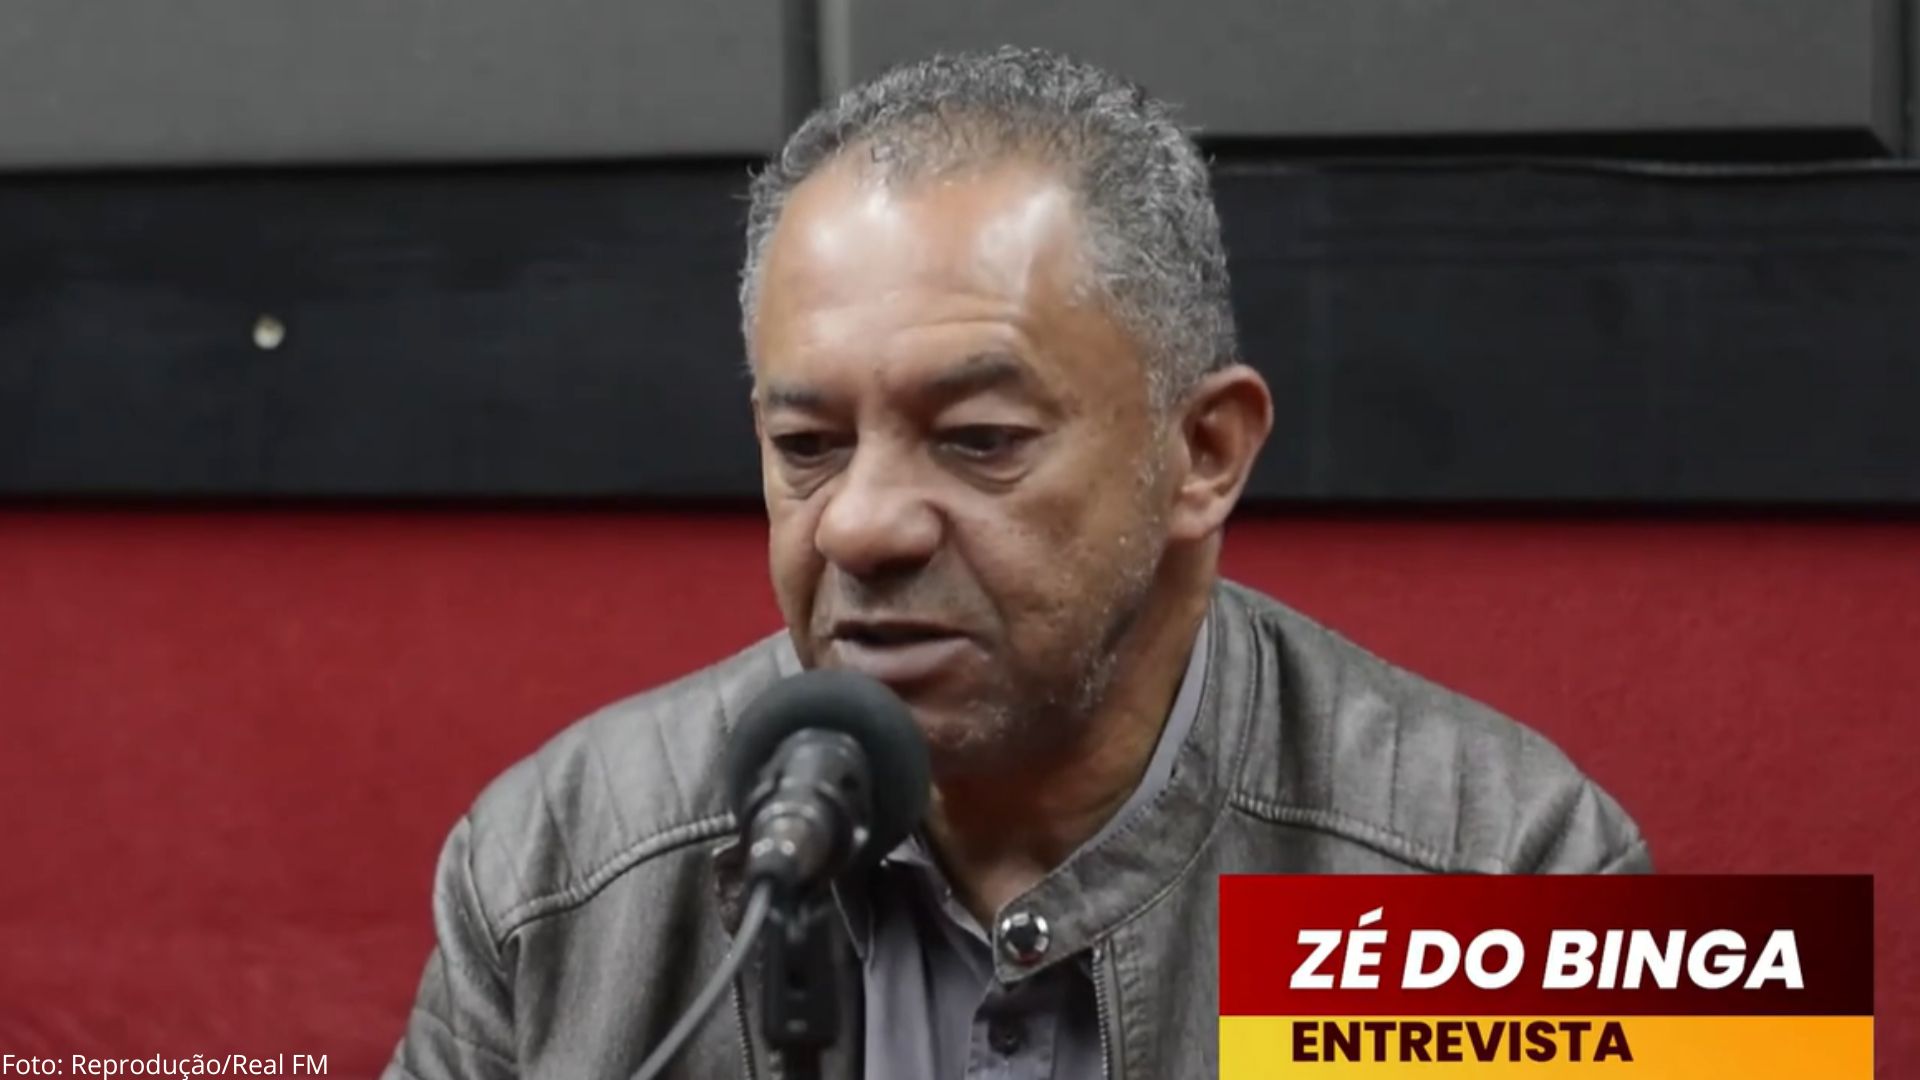 Zé do Binga descarta candidatura a prefeito de Ouro Preto e deixa aberto futuro como deputado